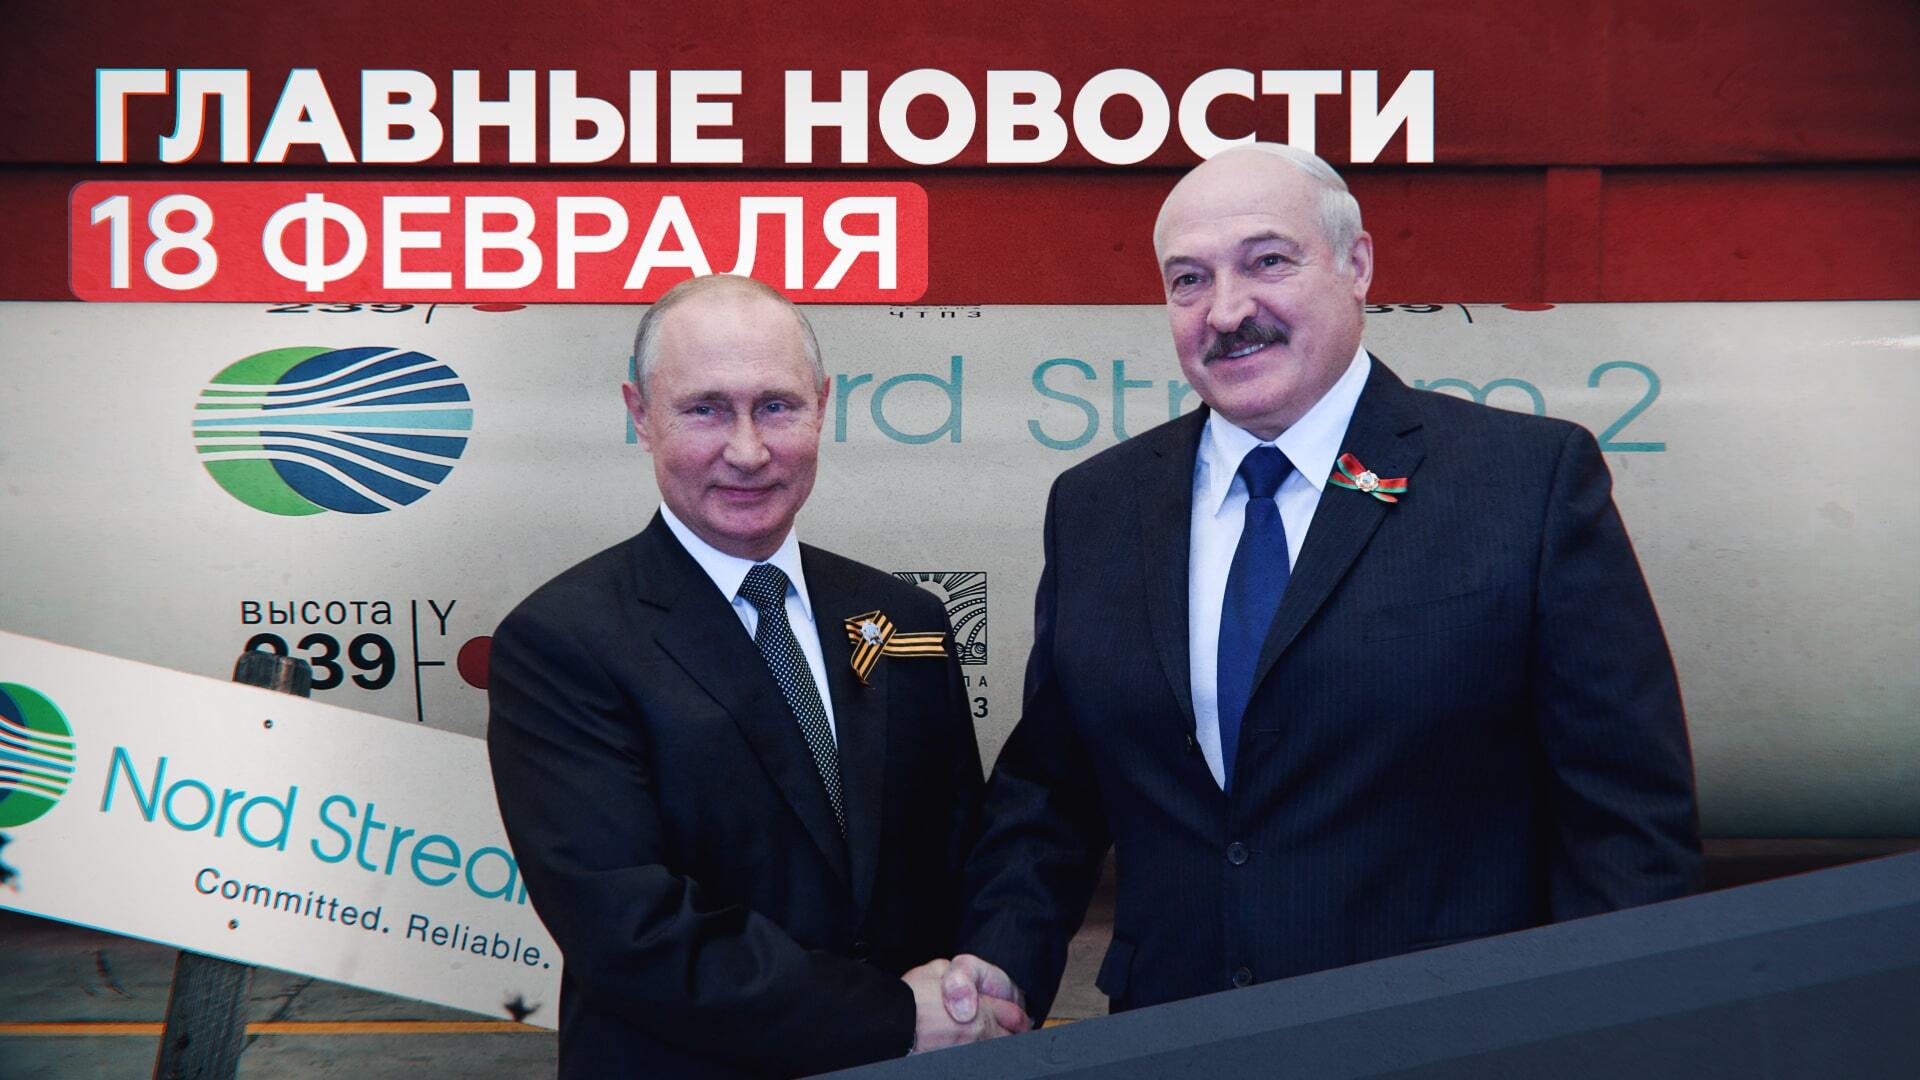 Новости дня 18 февраля: встреча Путина и Лукашенко, вакцина «Спутник Лайт»